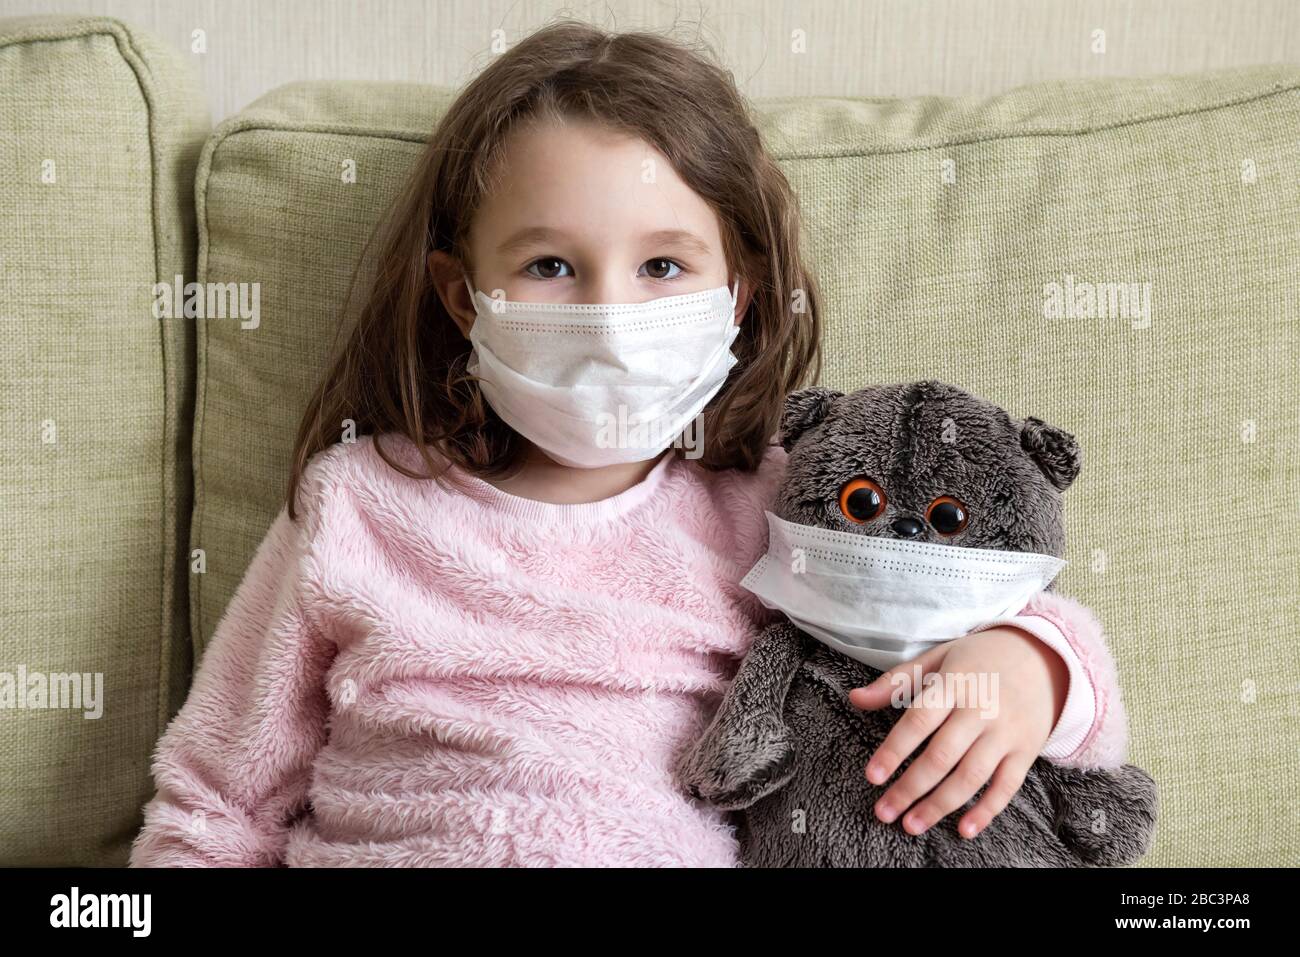 Rimanere a casa in quarantena, divertente bambino con giocattolo sul divano durante la pandemia di coronavirus COVID-19. Bambina in maschera medica per la protezione di corona vir Foto Stock